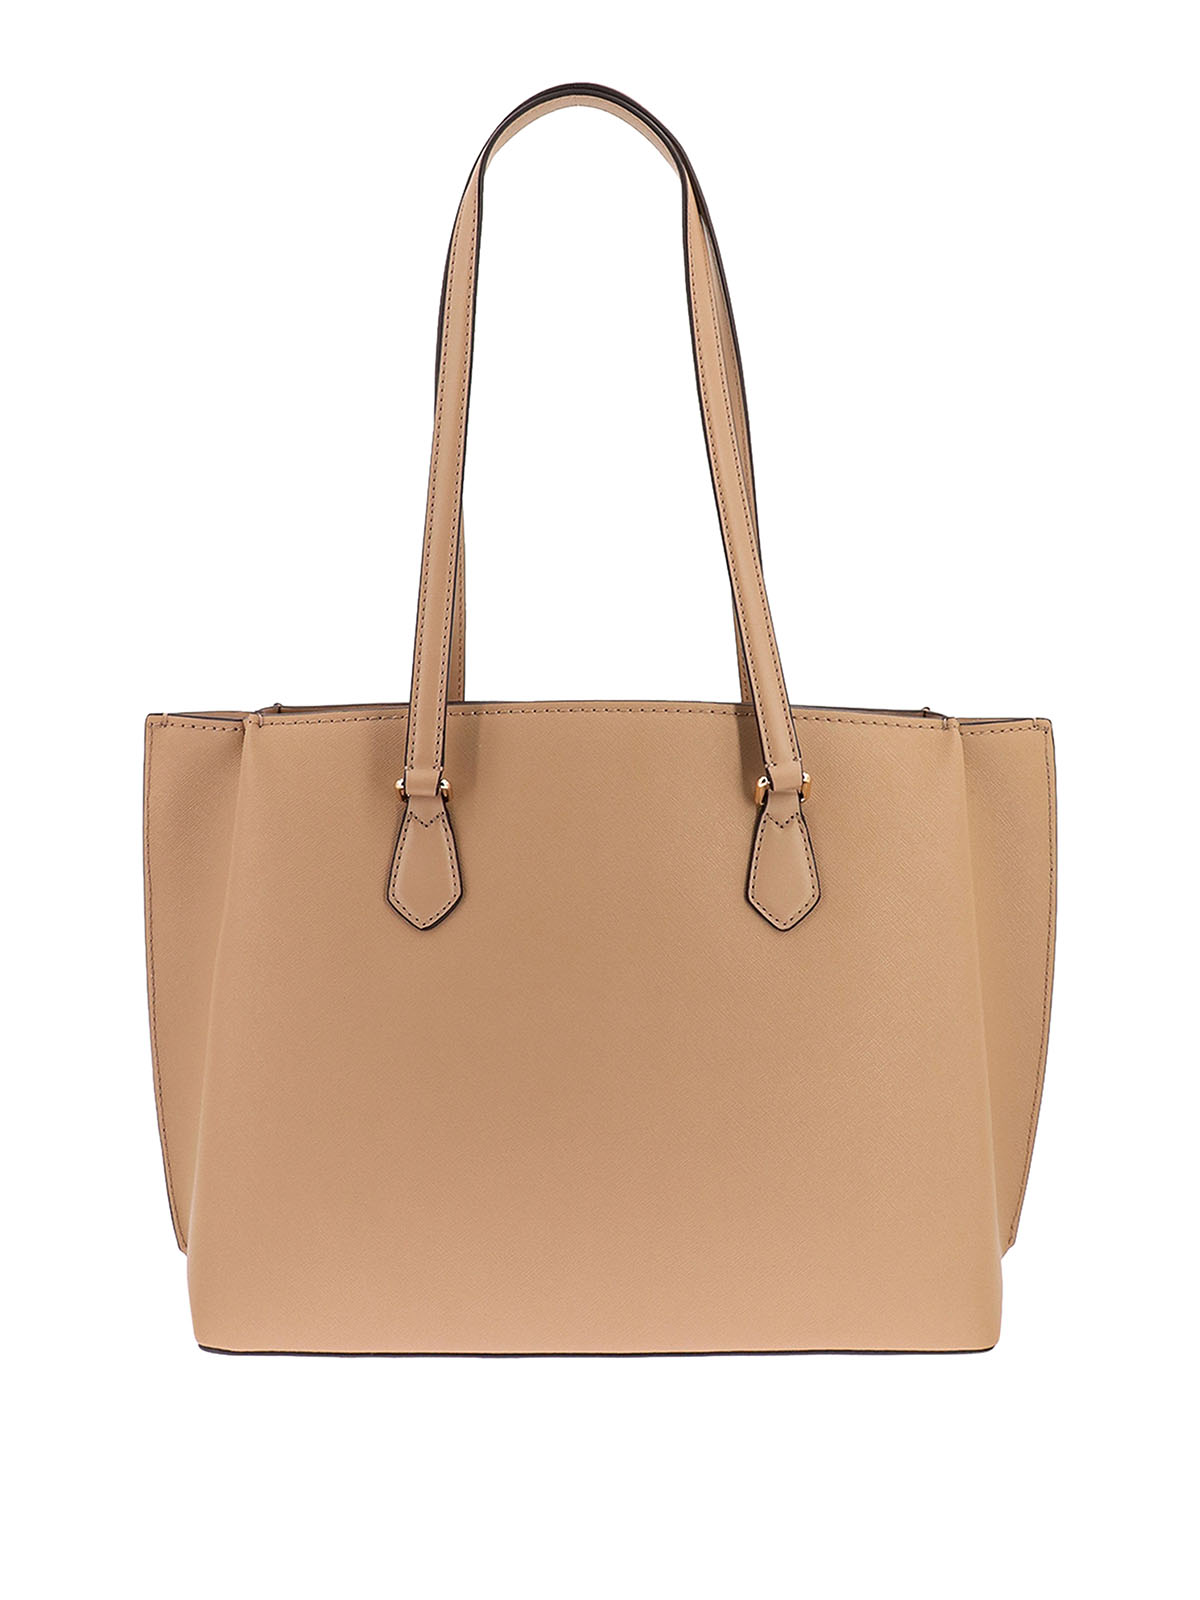 Totes bags Michael Kors - Saffianoo leather handbag - 30S3GR0T3L222